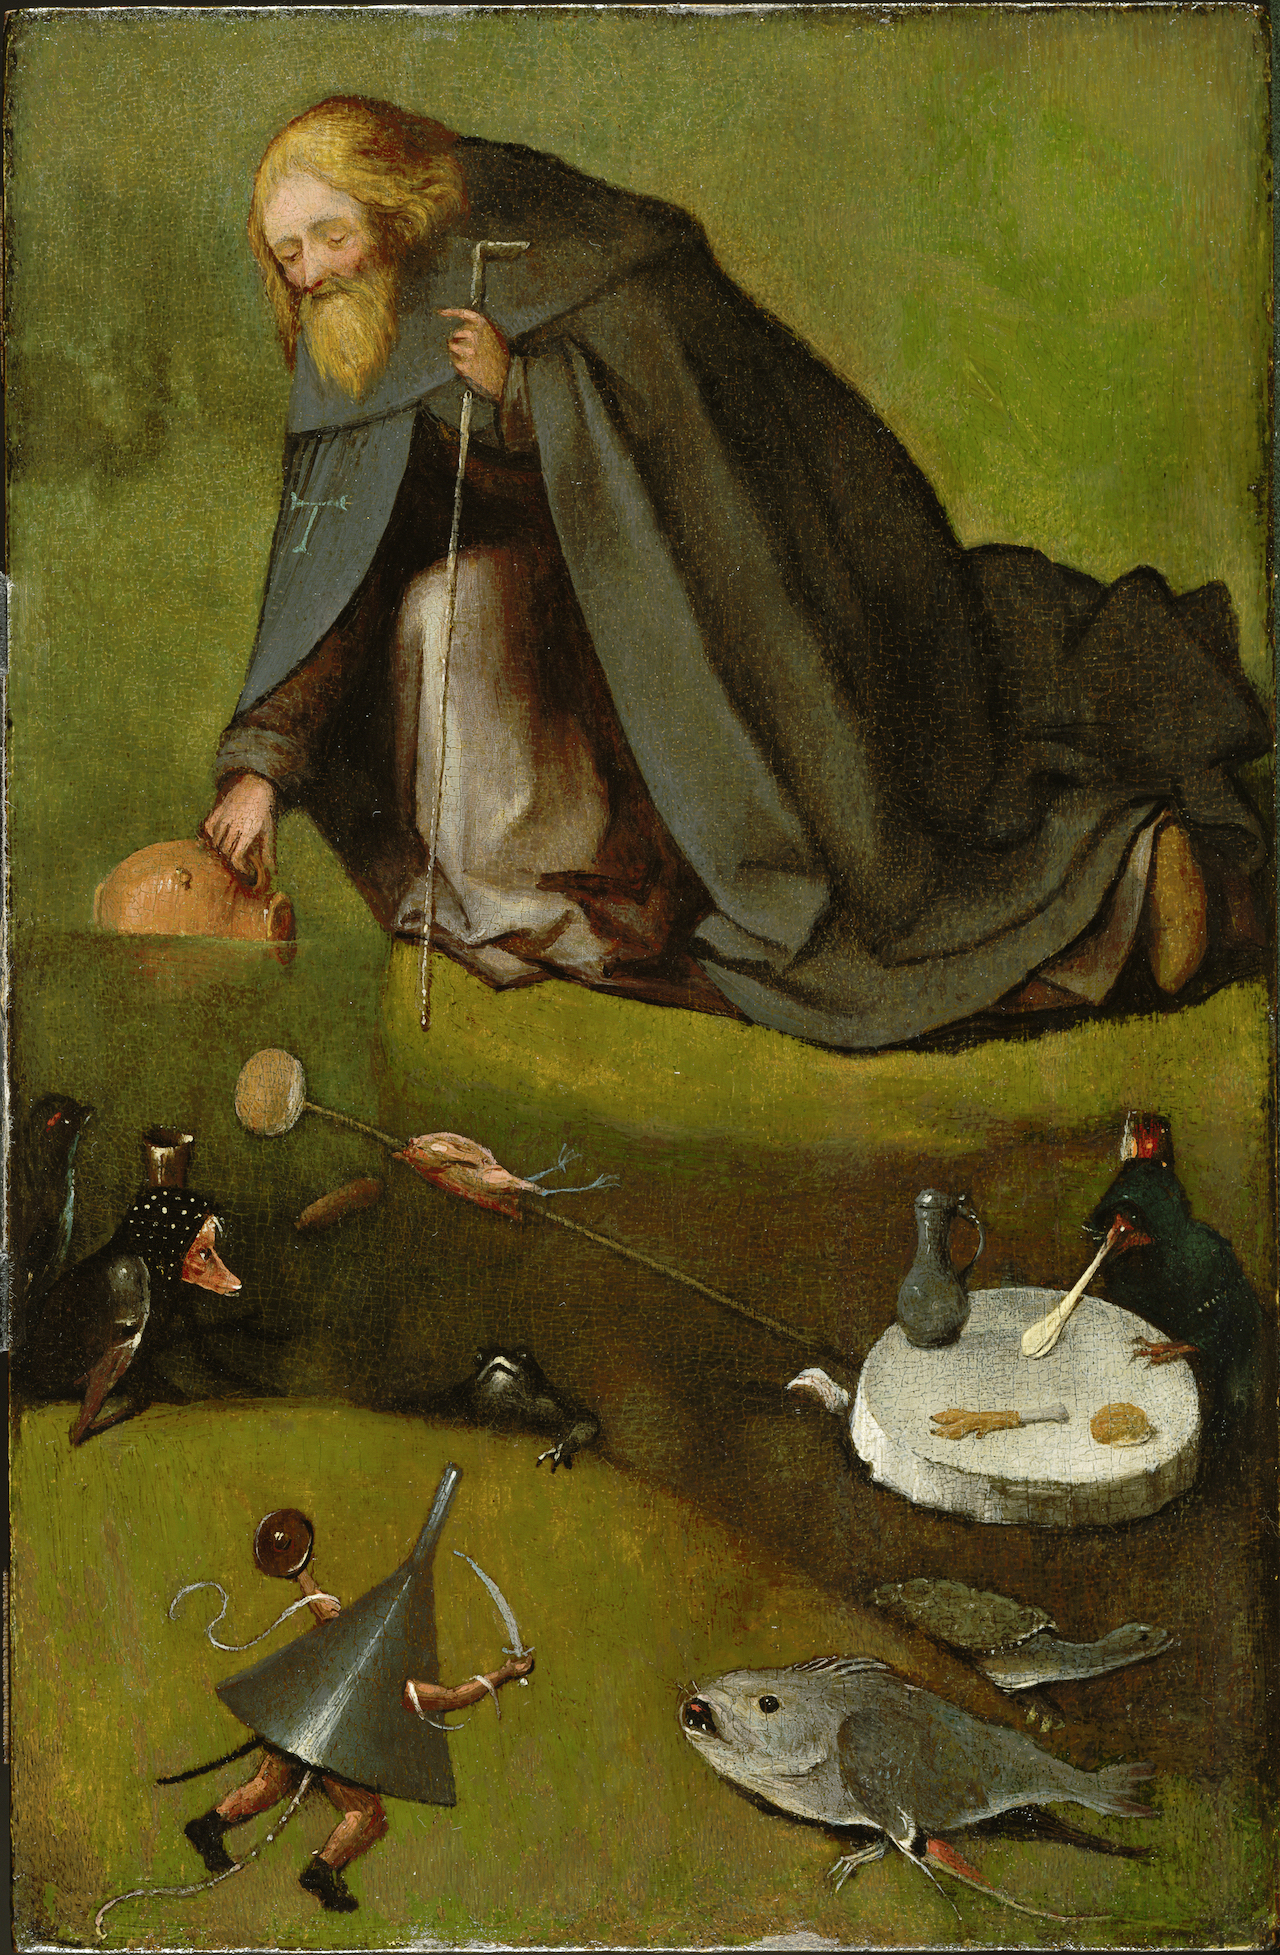 Szent Antal kísértése by Hieronymus Bosch - 1500-1510 - 38.58 × 25.4 cm 